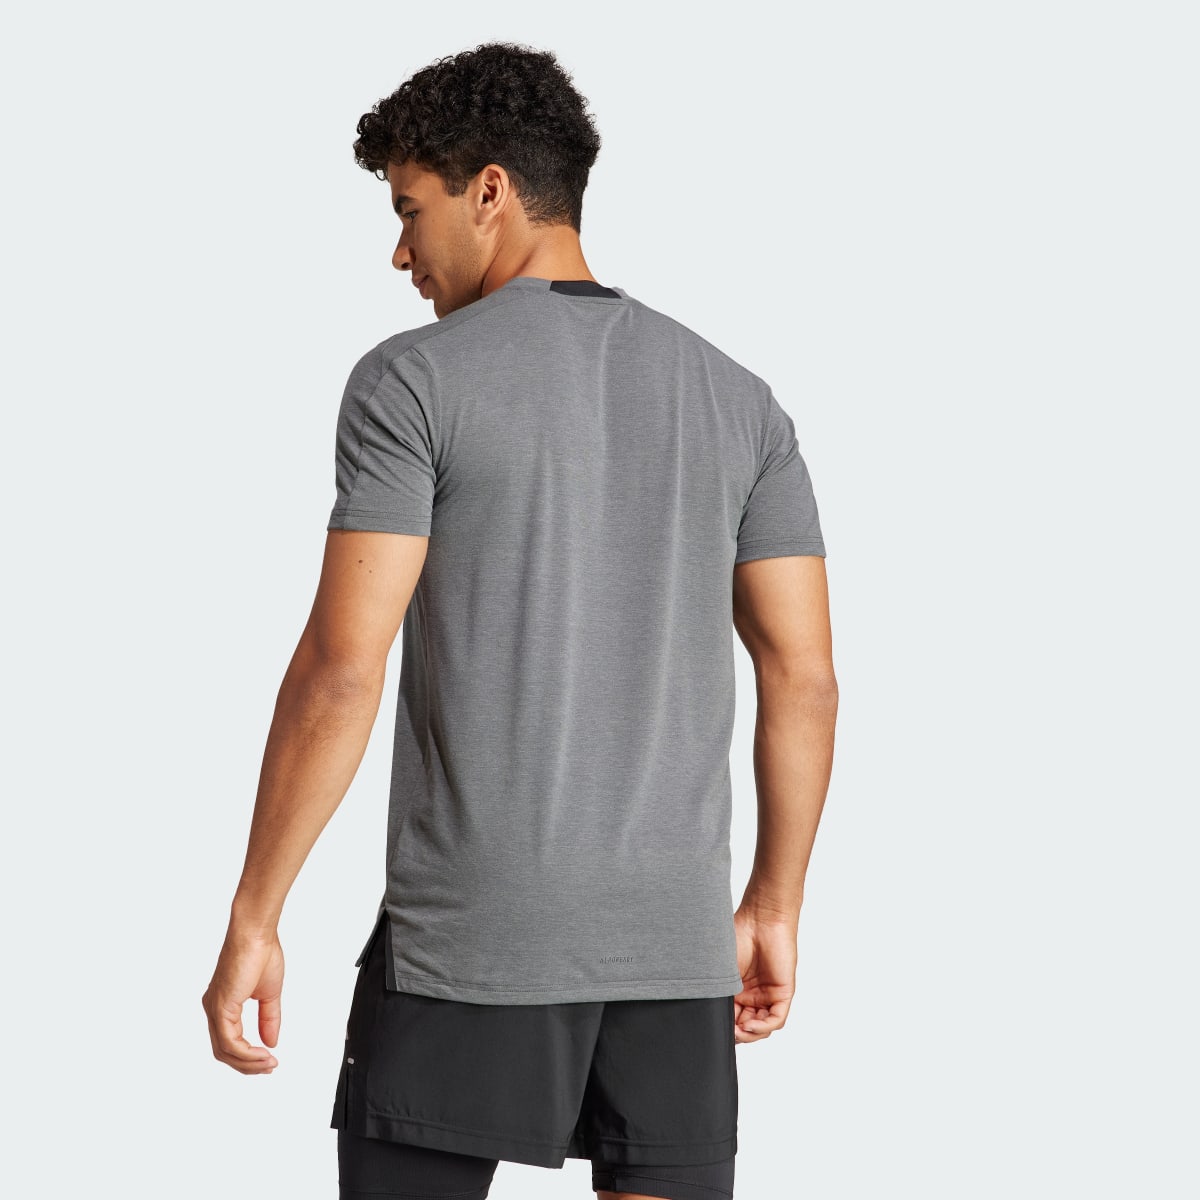 Adidas Camiseta Designed for Training Workout. 4